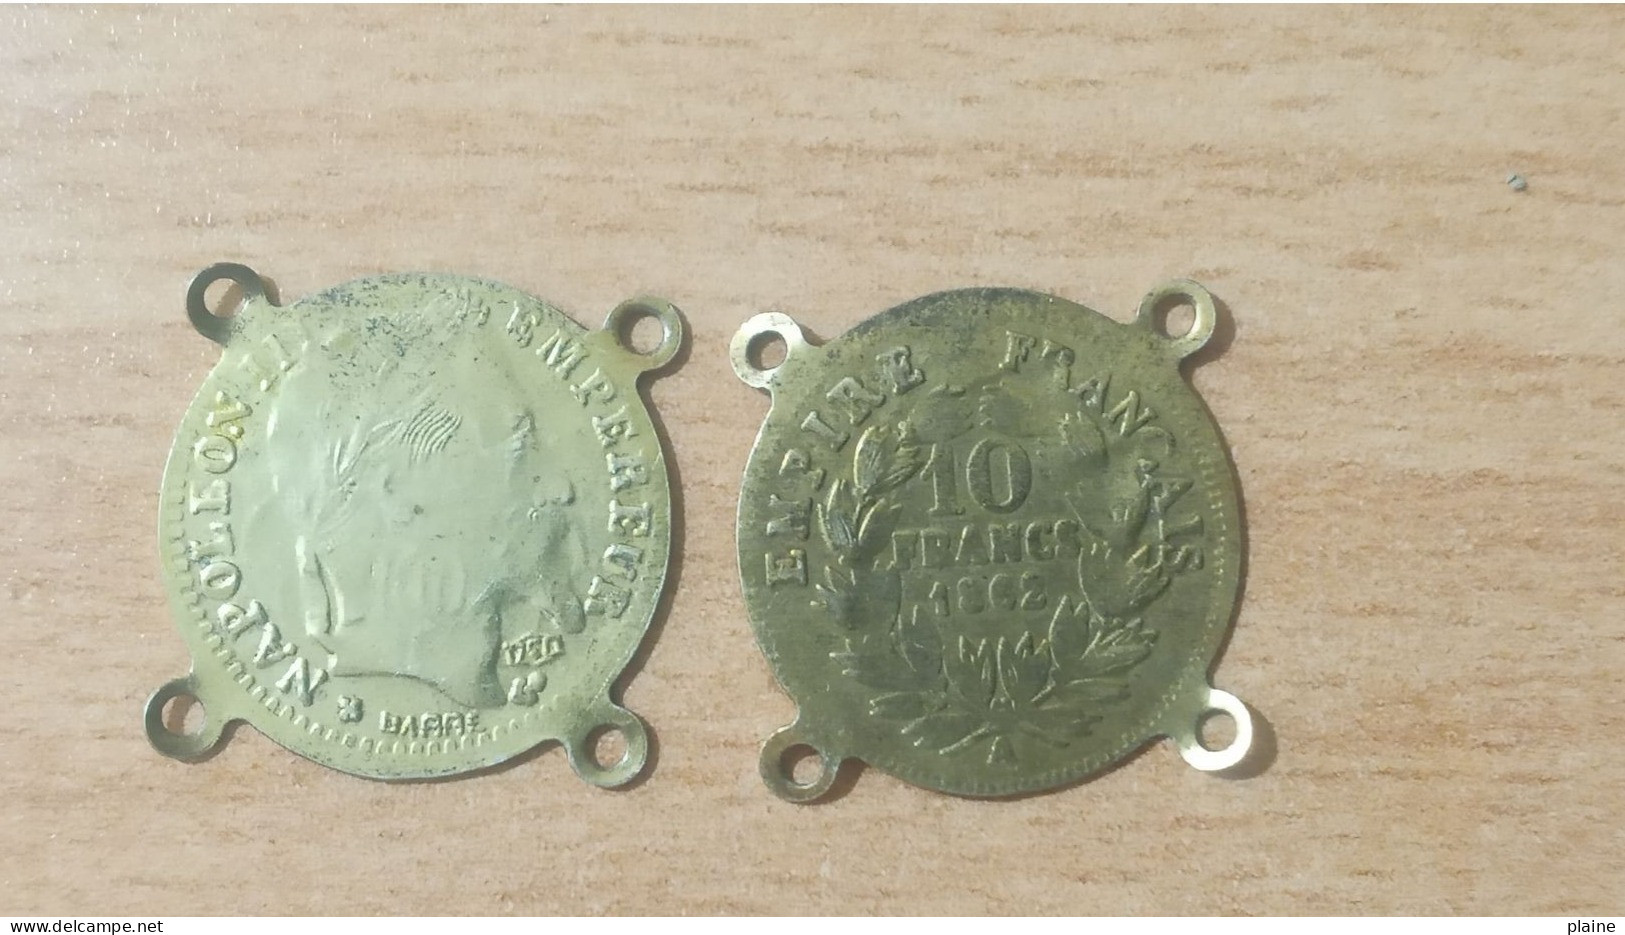 02 PIECES EN CUIVRES DE 10 FRANCS DE L'EMPIRE FRANCAIS-EMPEREUR NAPOLEON III-1862 - 10 Francs (or)